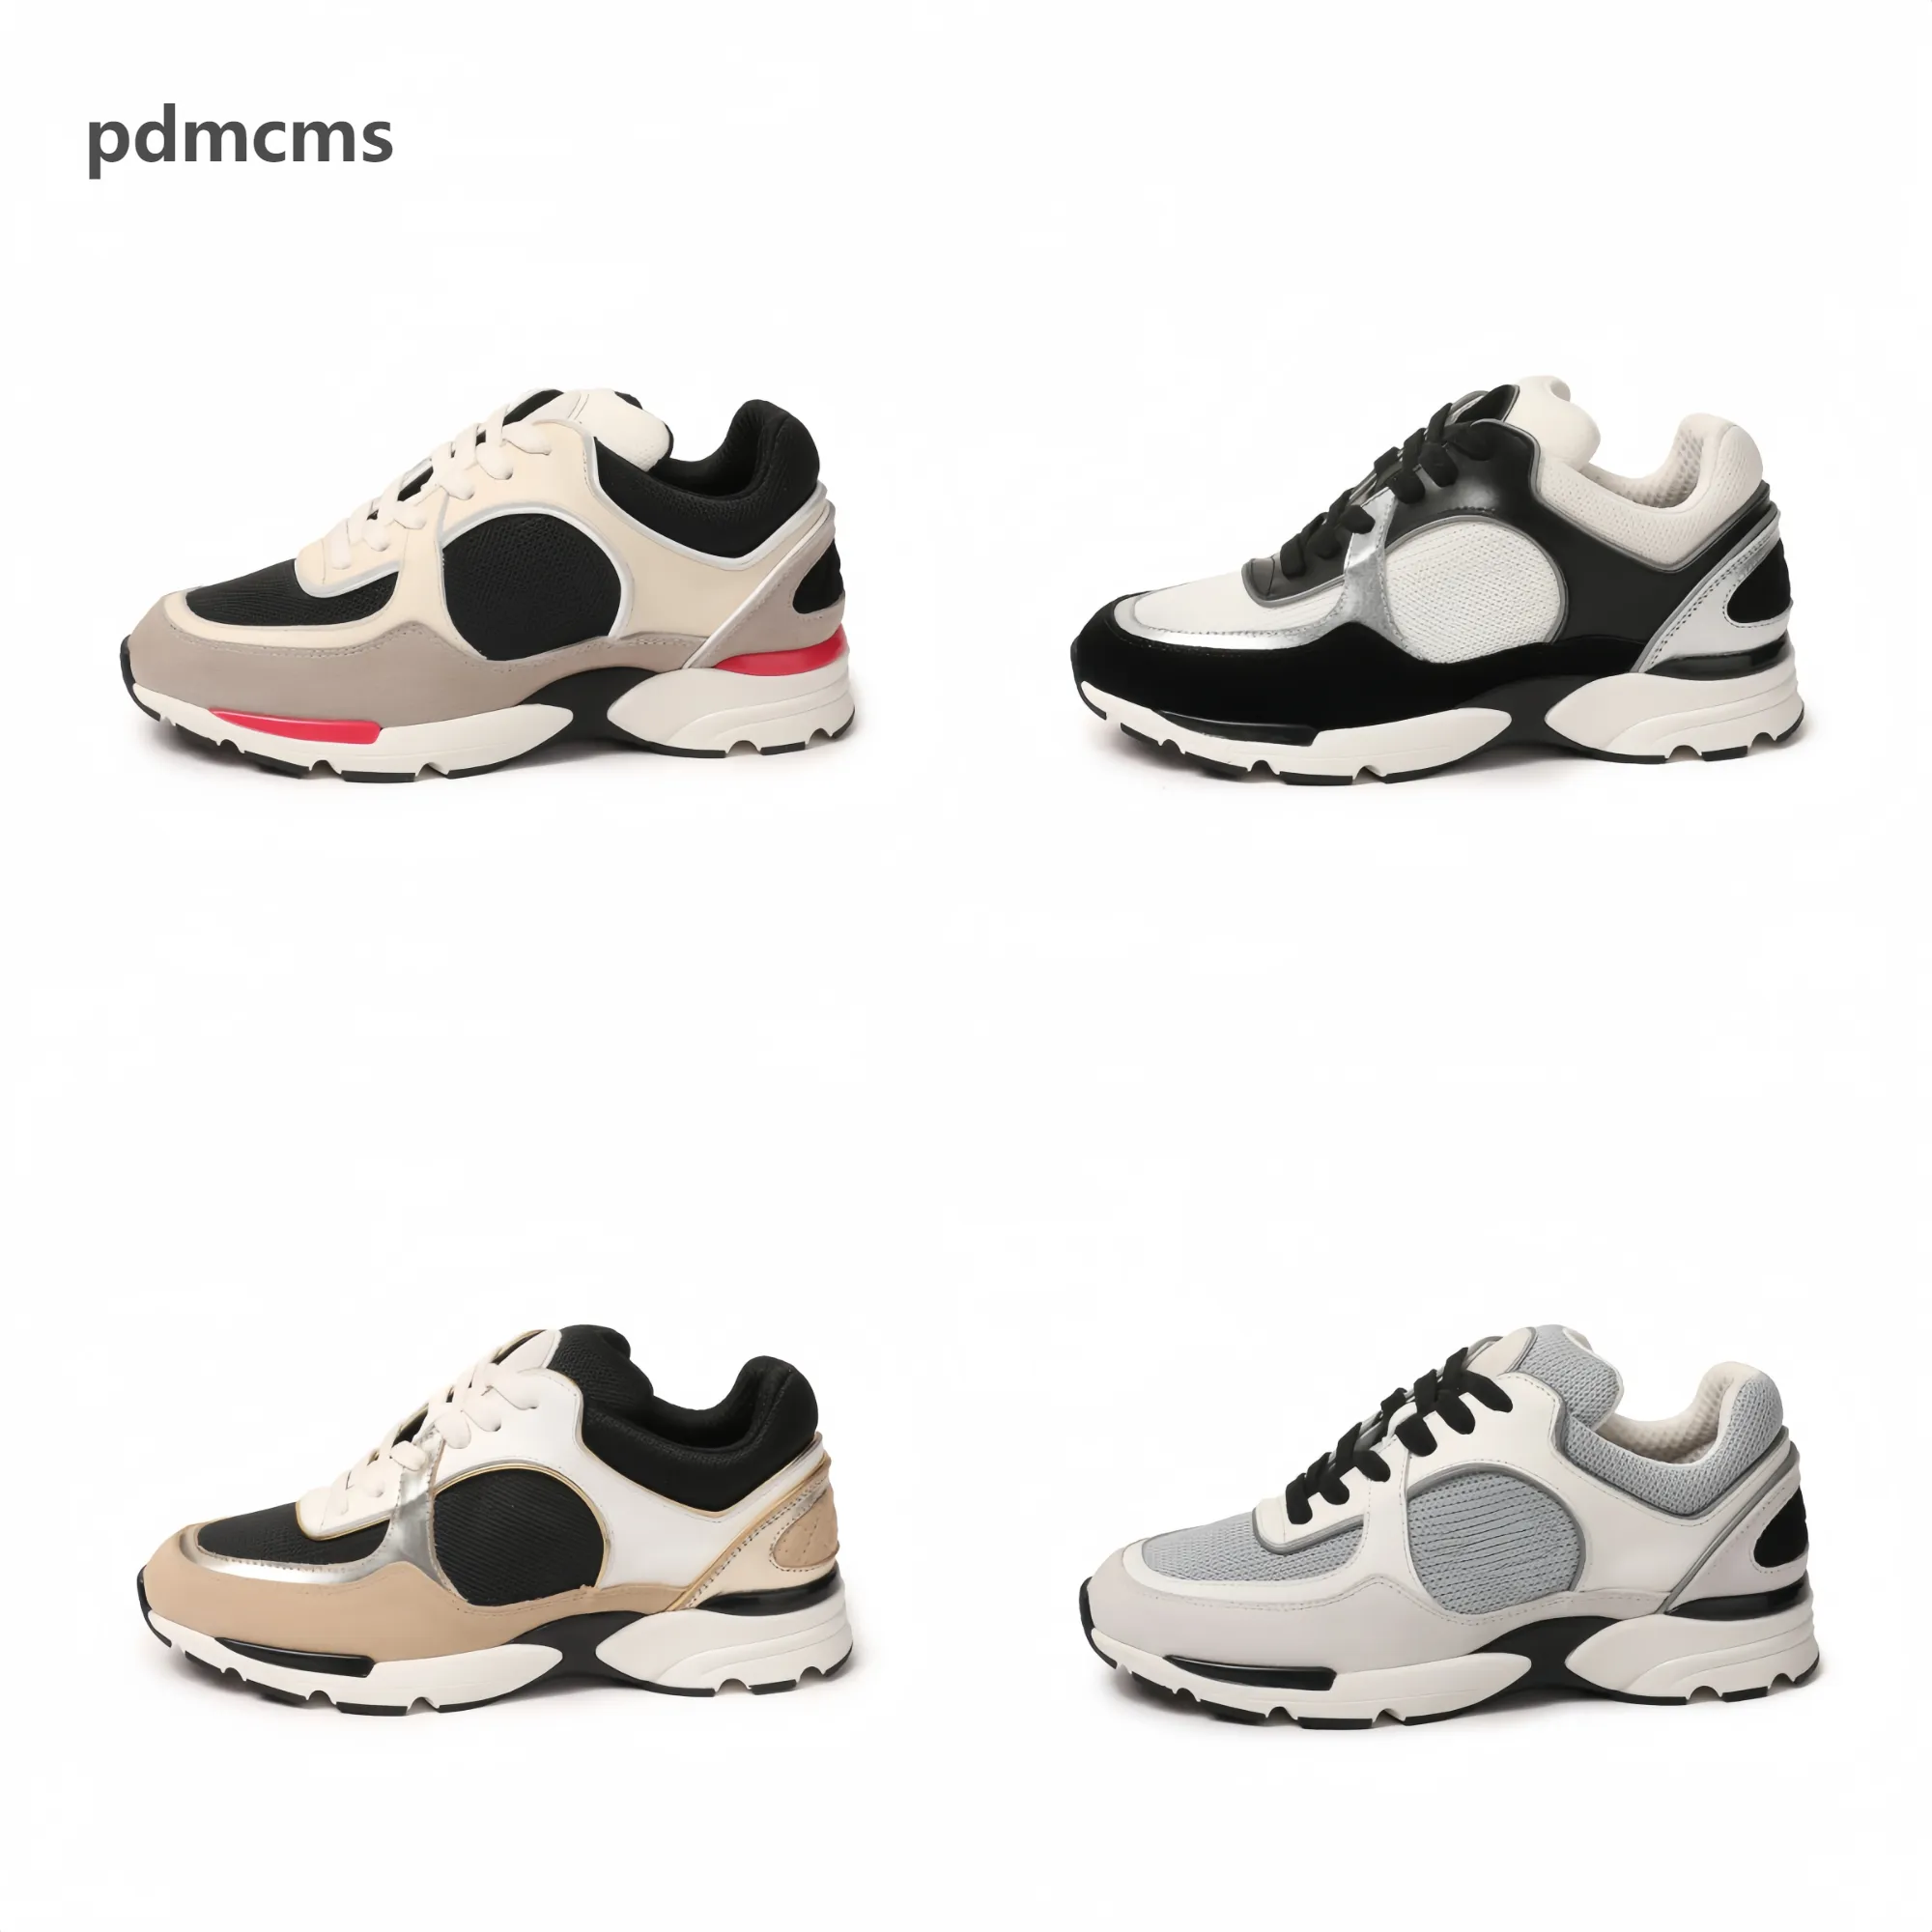 Pdmcms Scarpe sportive casual comode e traspiranti progettate per uomini e donne, che consentono ai piedi di godere della libertà e della moda35-45